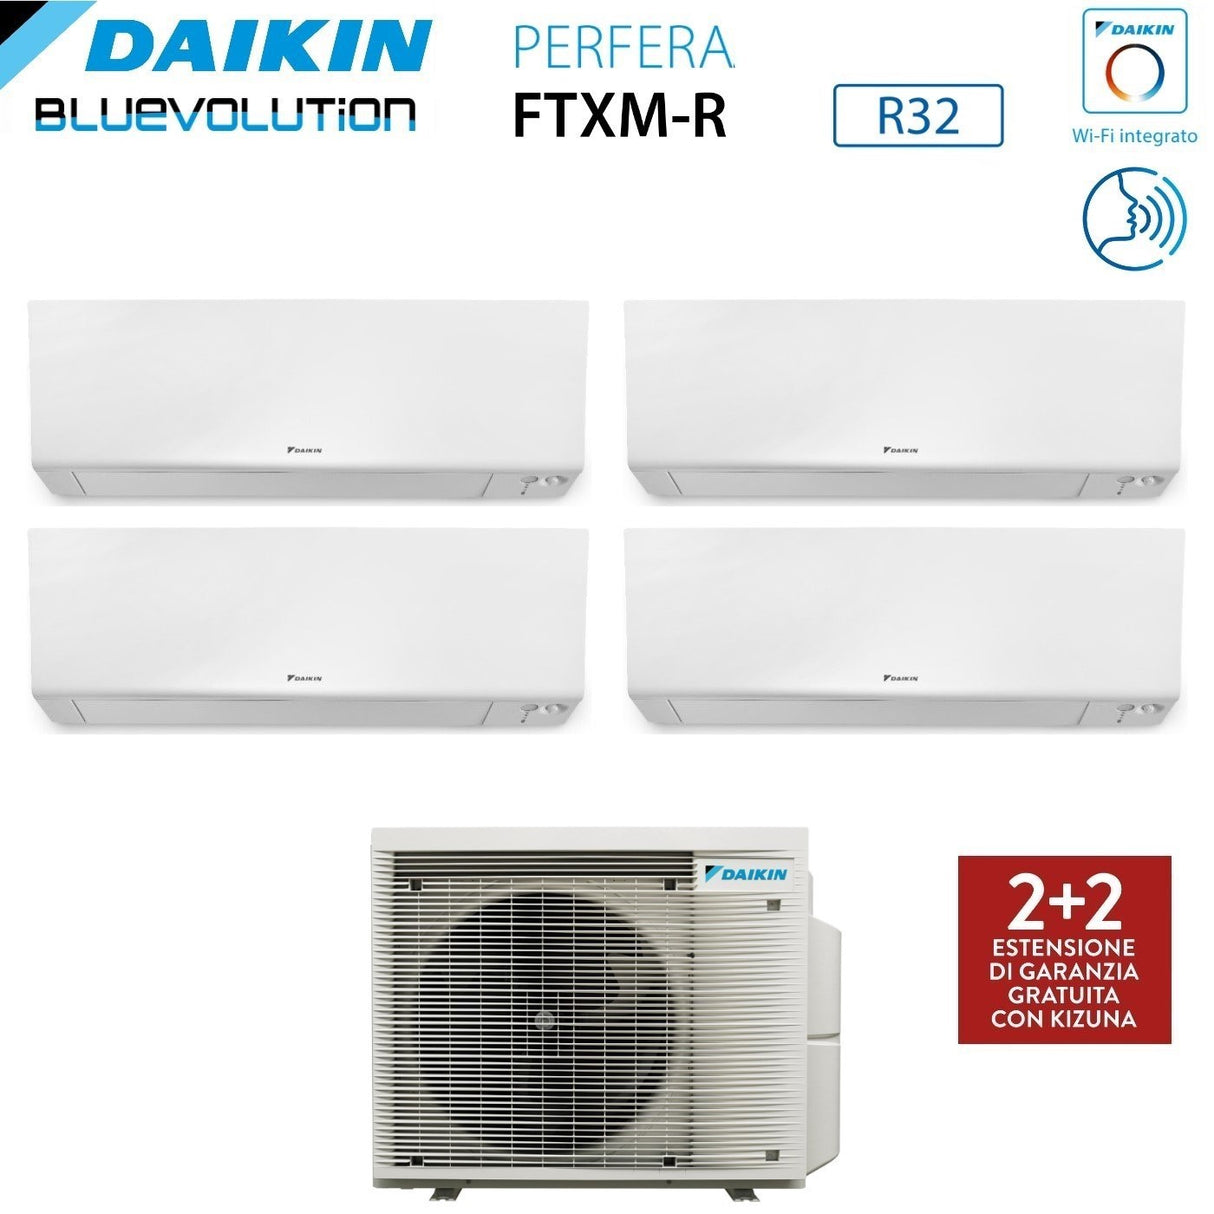 immagine-2-daikin-climatizzatore-condizionatore-daikin-bluevolution-quadri-split-inverter-serie-ftxmr-perfera-wall-791218-con-4mxm80a-r-32-wi-fi-integrato-700090001200018000-garanzia-italiana